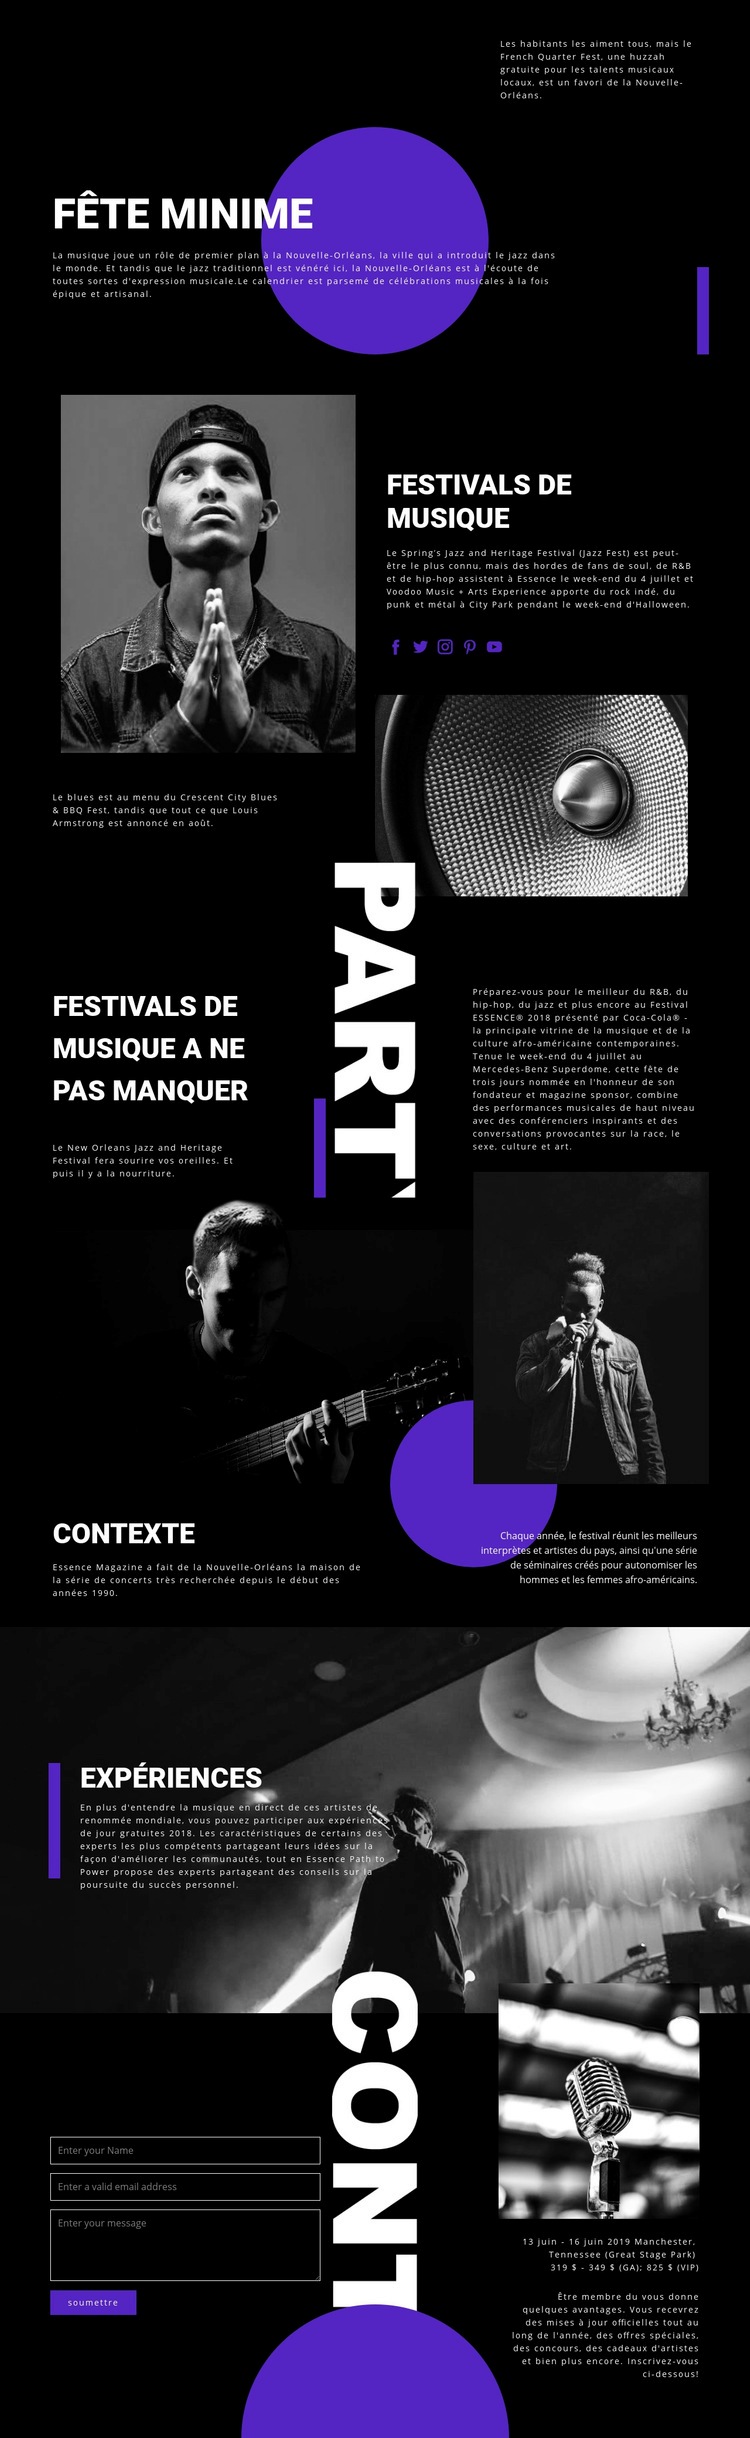 Festival de musique Maquette de site Web